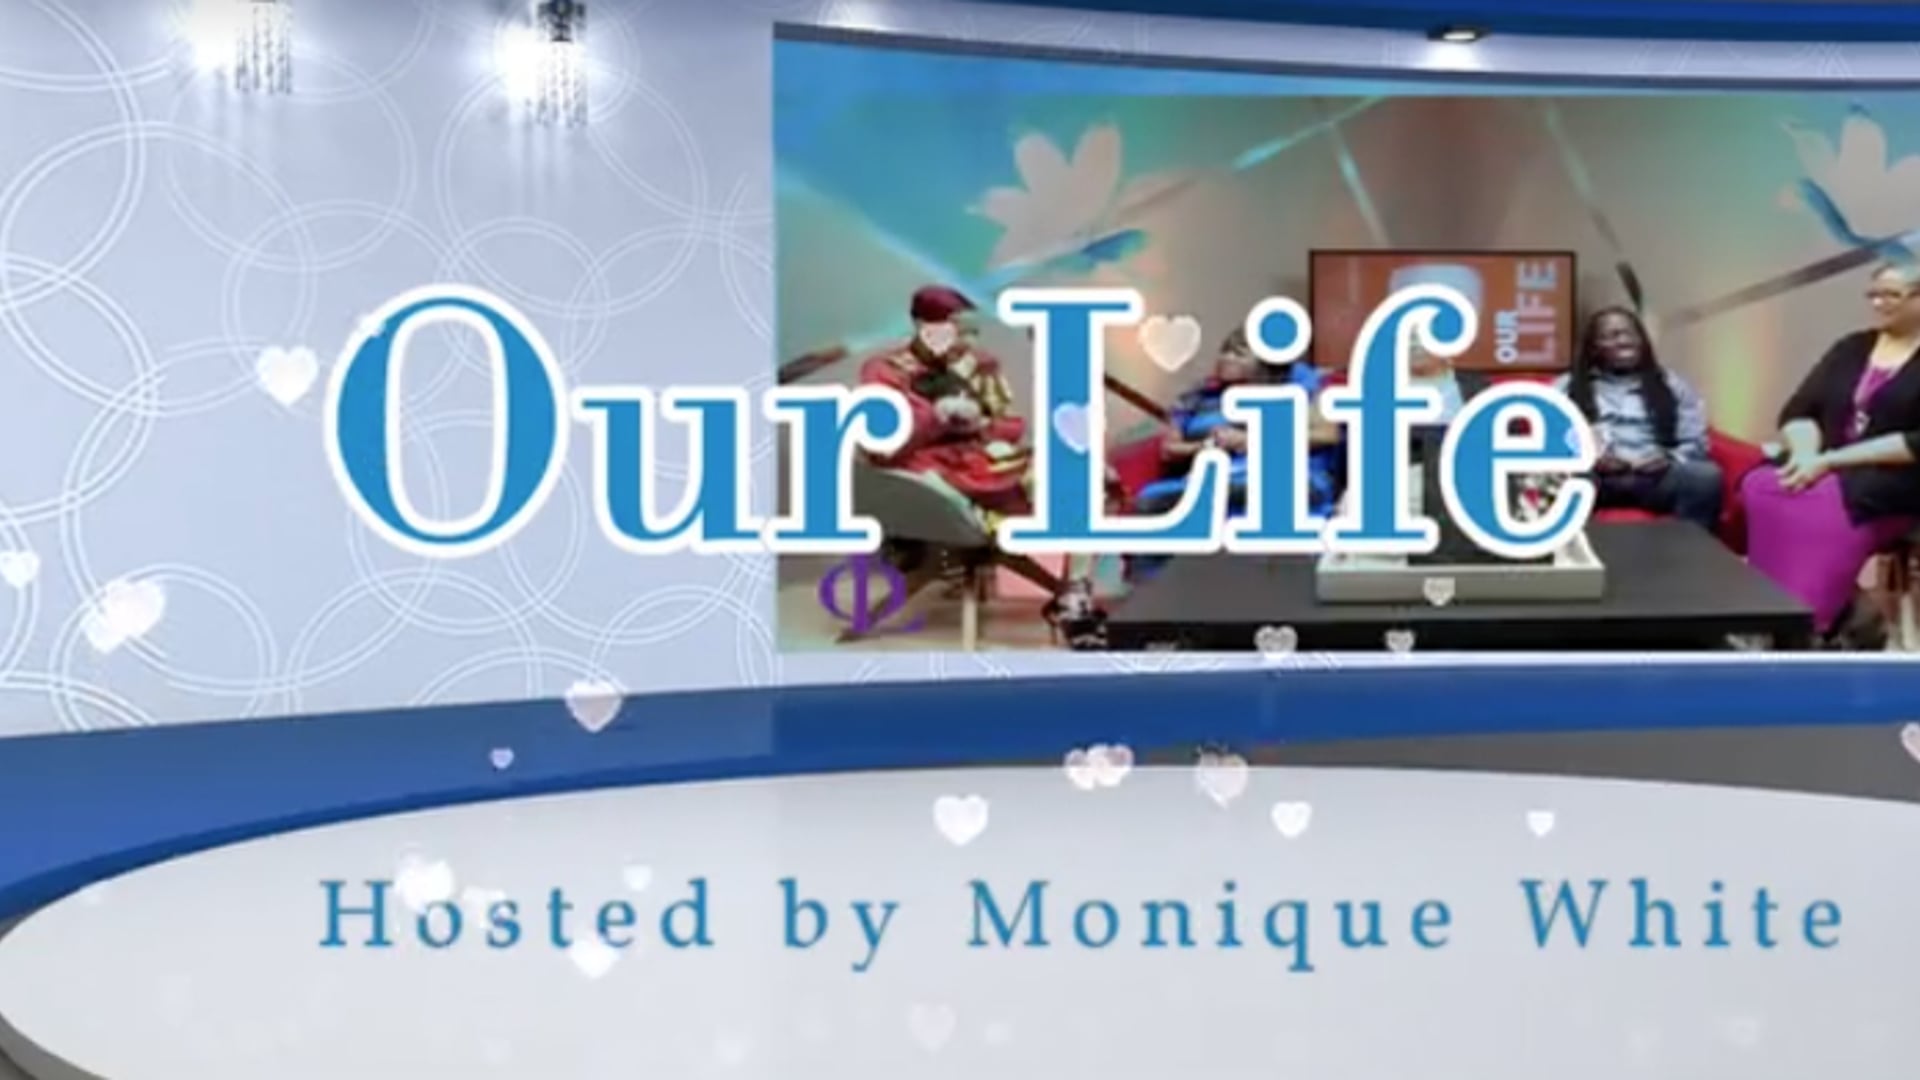 Our Life TV Show S2 E19